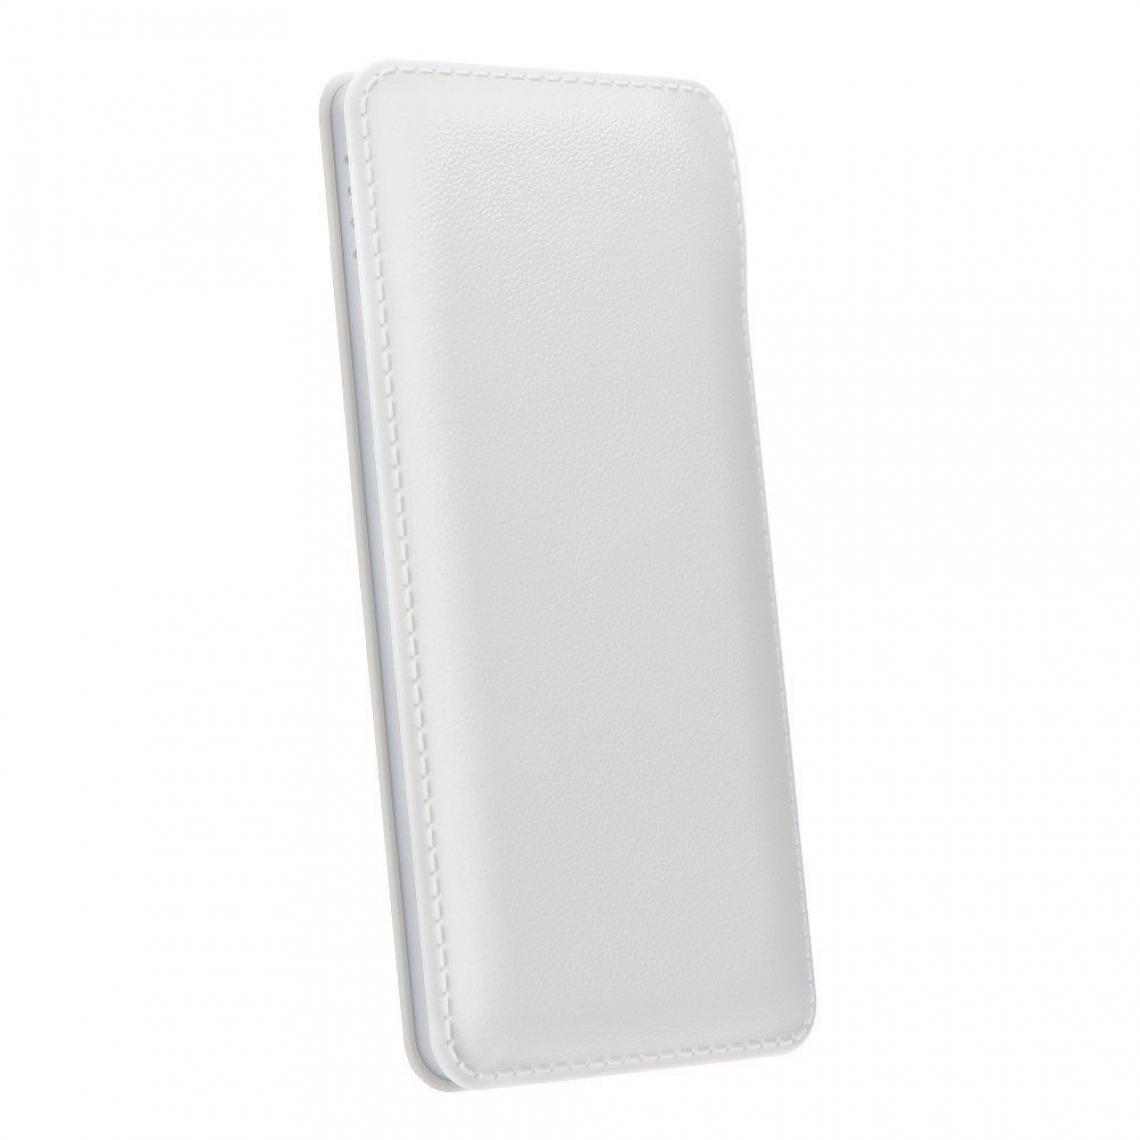 Ozzzo - Chargeur batterie externe 10000mAh powerbank ozzzo blanc pour Infinix S5 - Autres accessoires smartphone